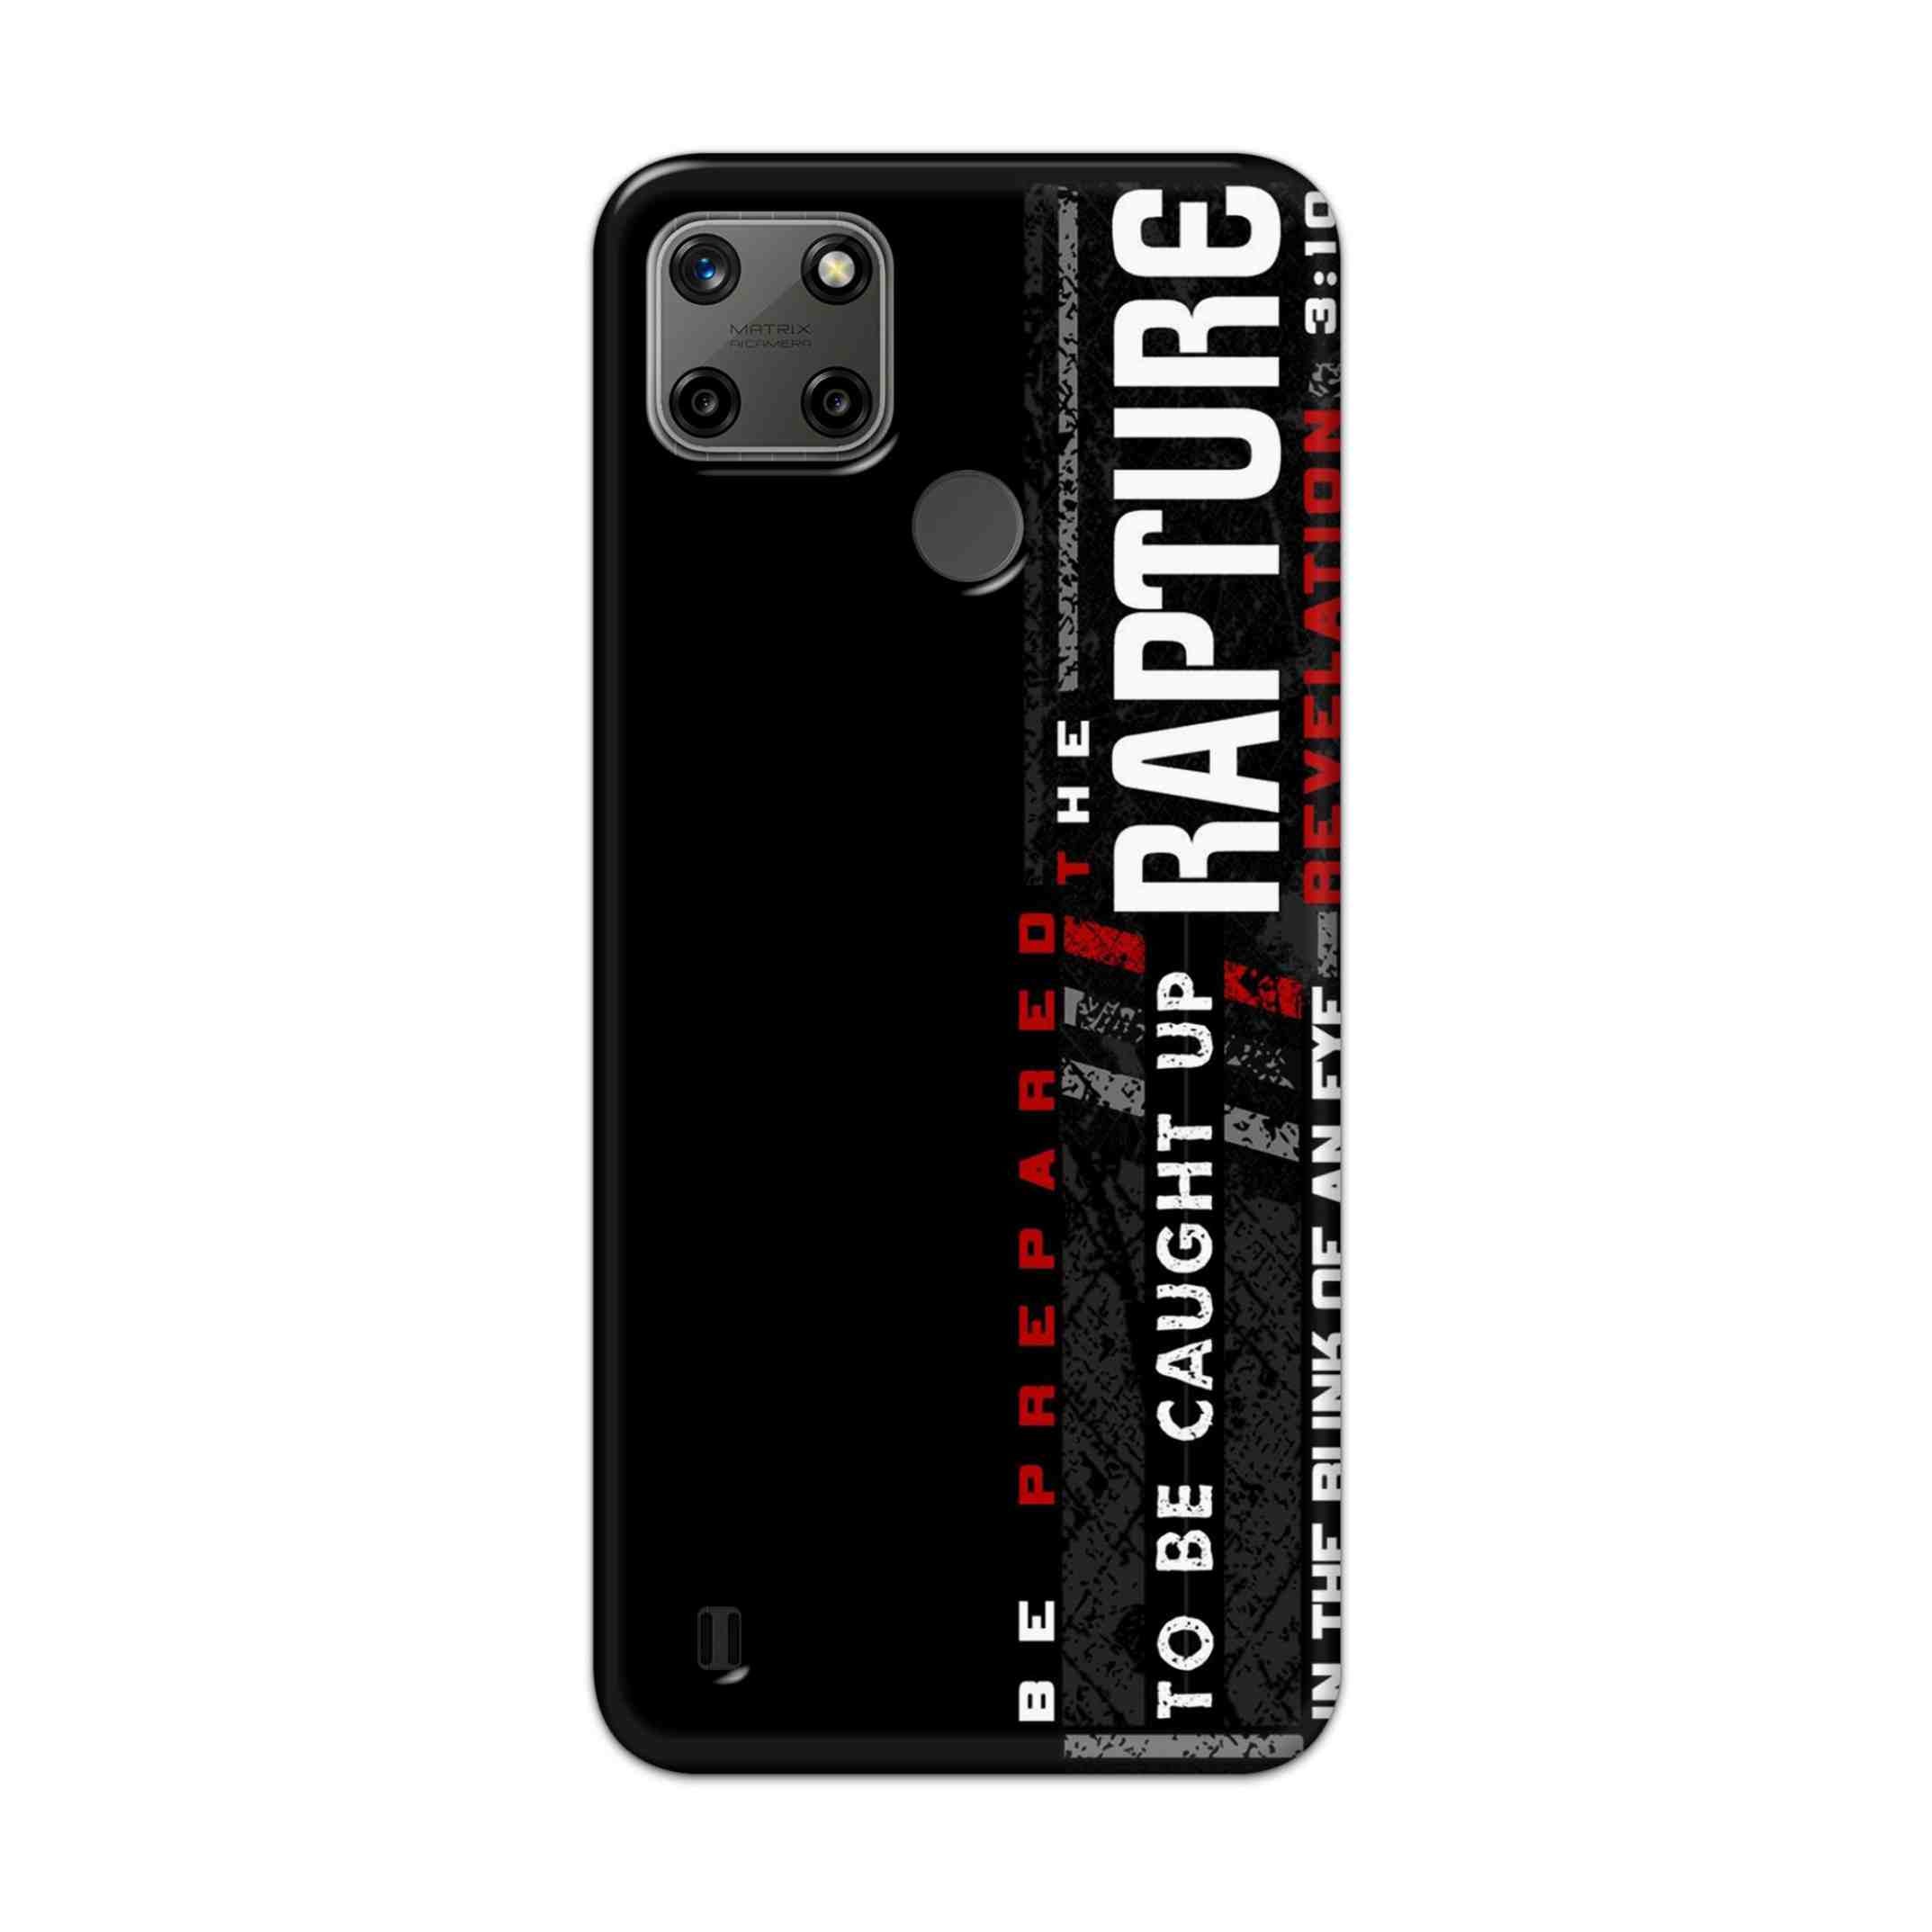 Buy Rapture Hard Back Mobile Phone Case Cover For Realme C25Y Online